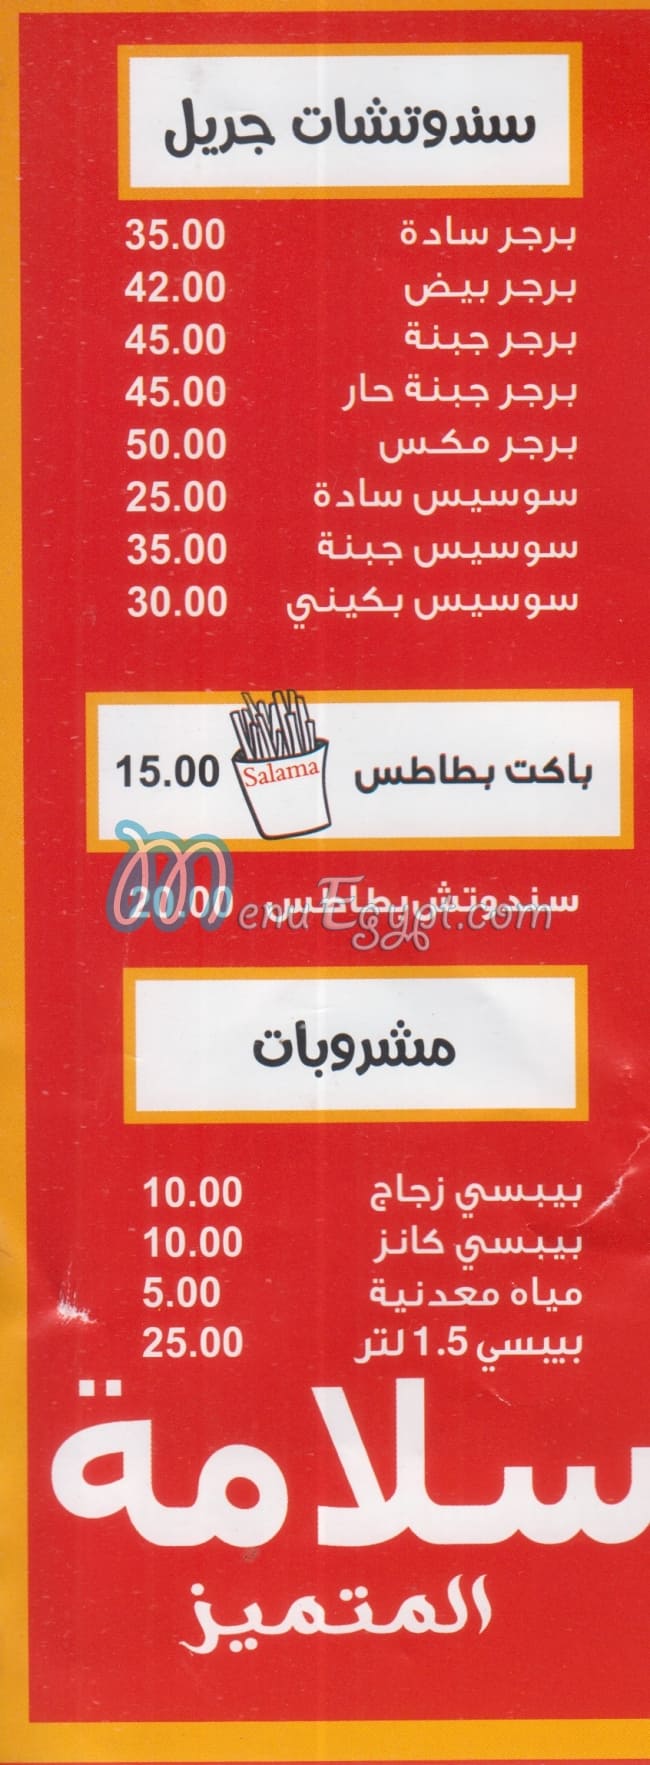 Salama El Motamyez menu Egypt